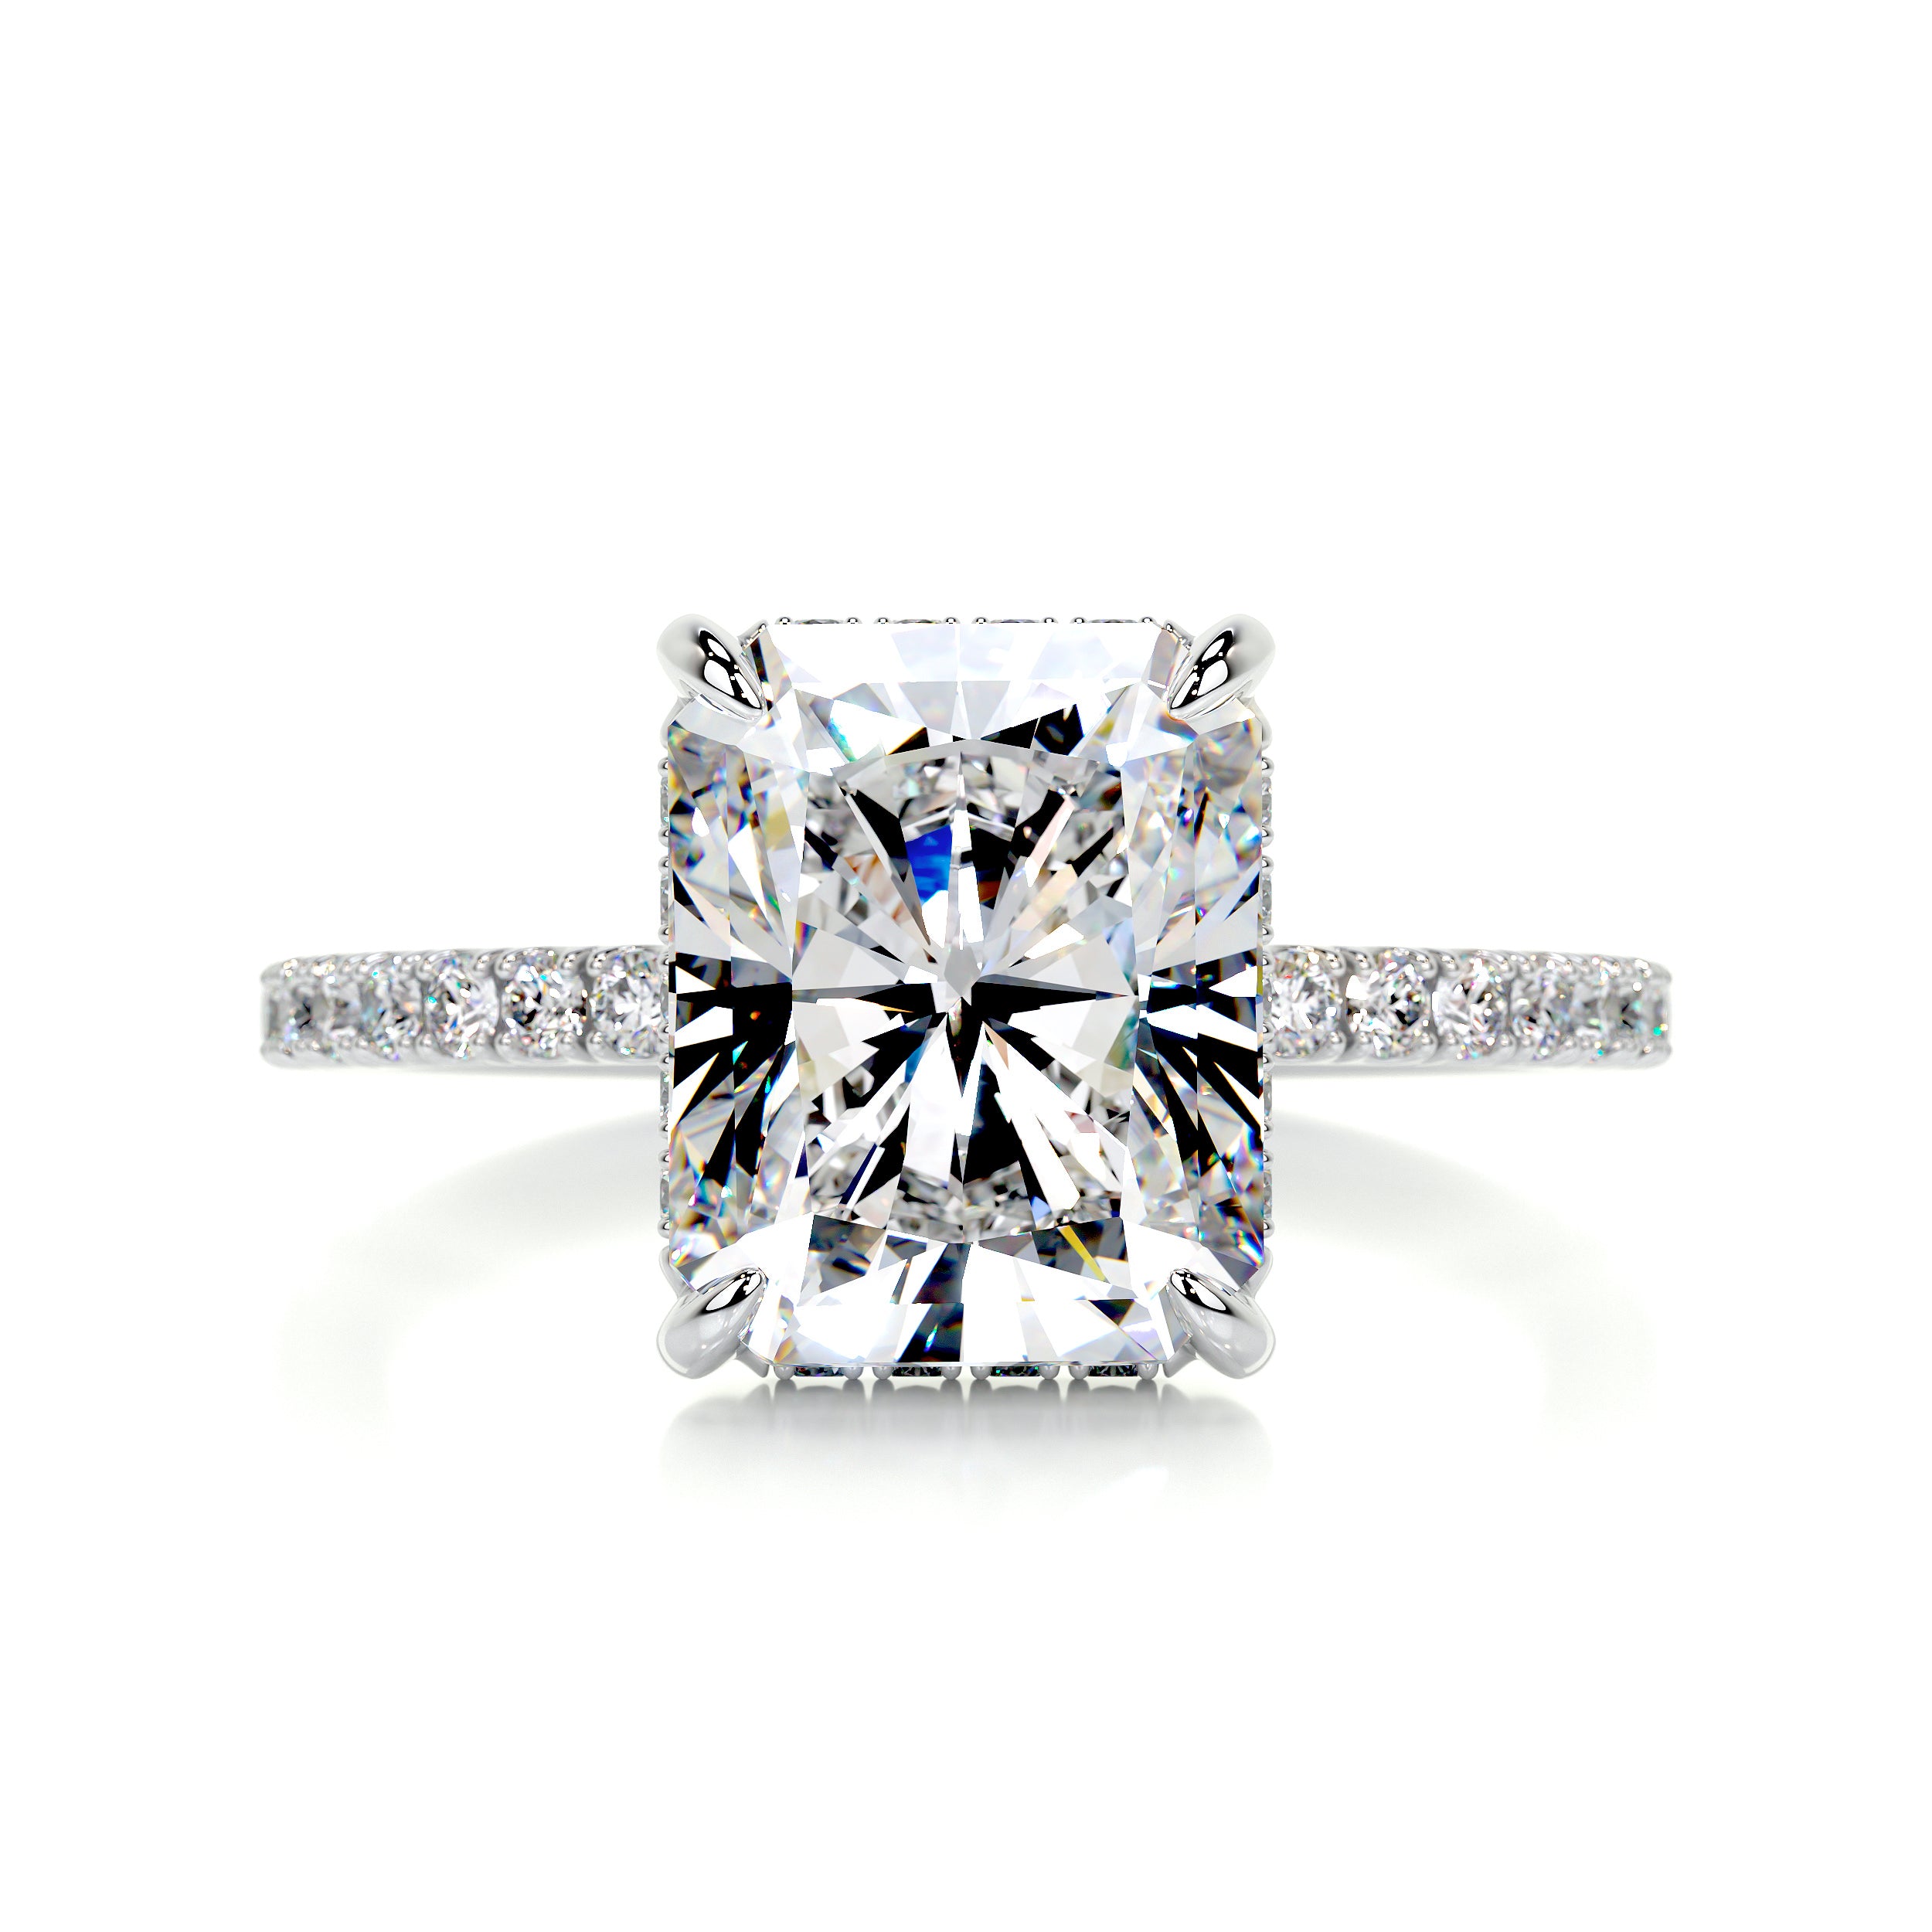 Luna Moissanite & Diamonds Ring   (4.2 Carat) -Platinum